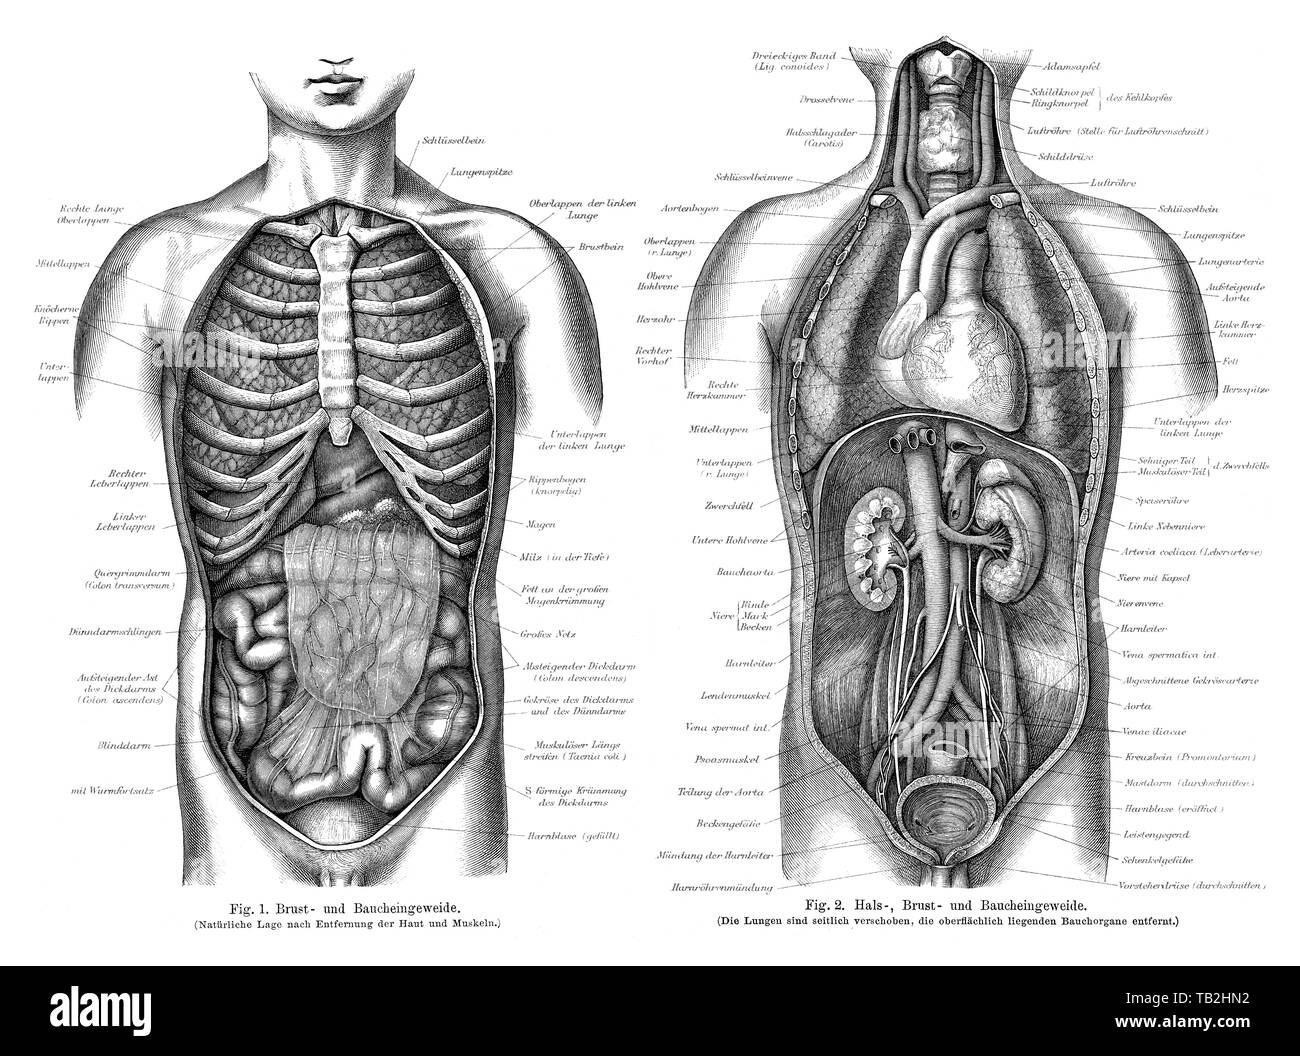 human intestines, Zeichnerische Darstellung, Eingeweide des Menschen, aus Meyers Konversations-Lexikon, 1889 Stock Photo